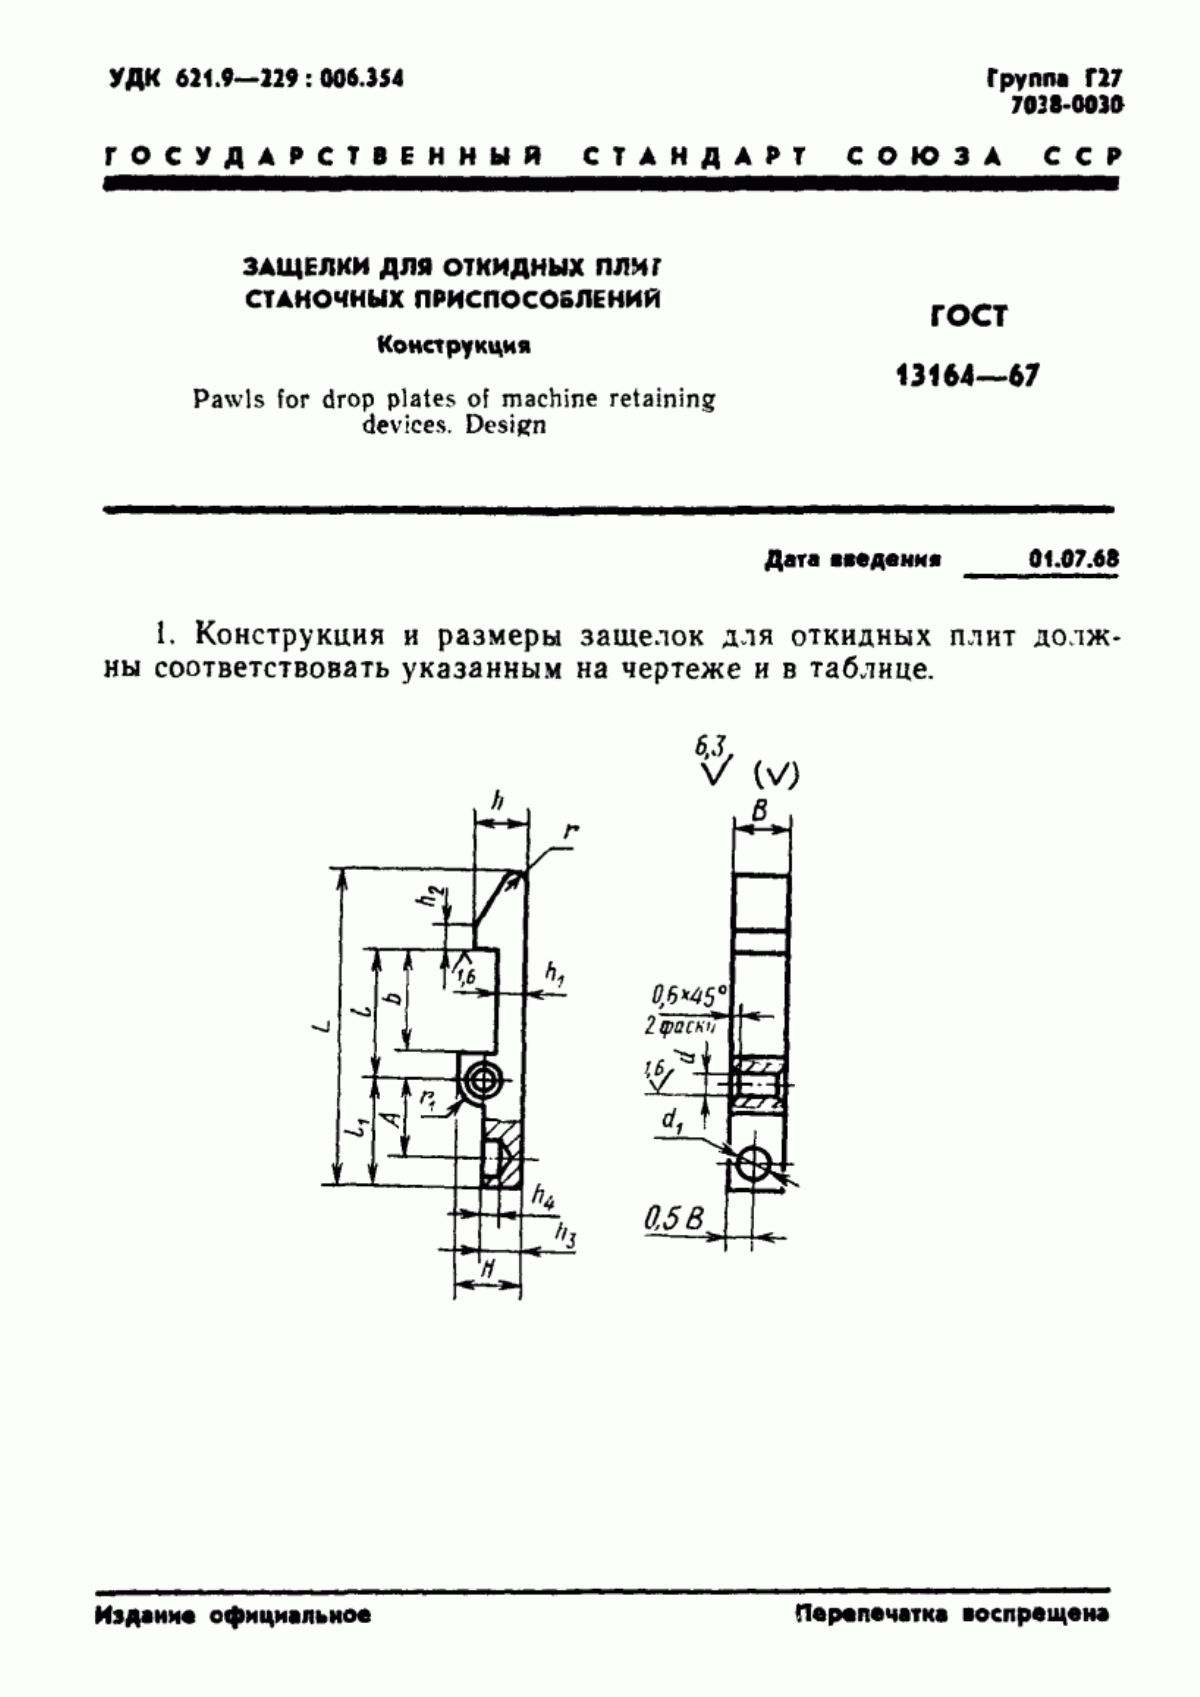 ГОСТ 13164-67 Защелки для откидных плит станочных приспособлений. Конструкция